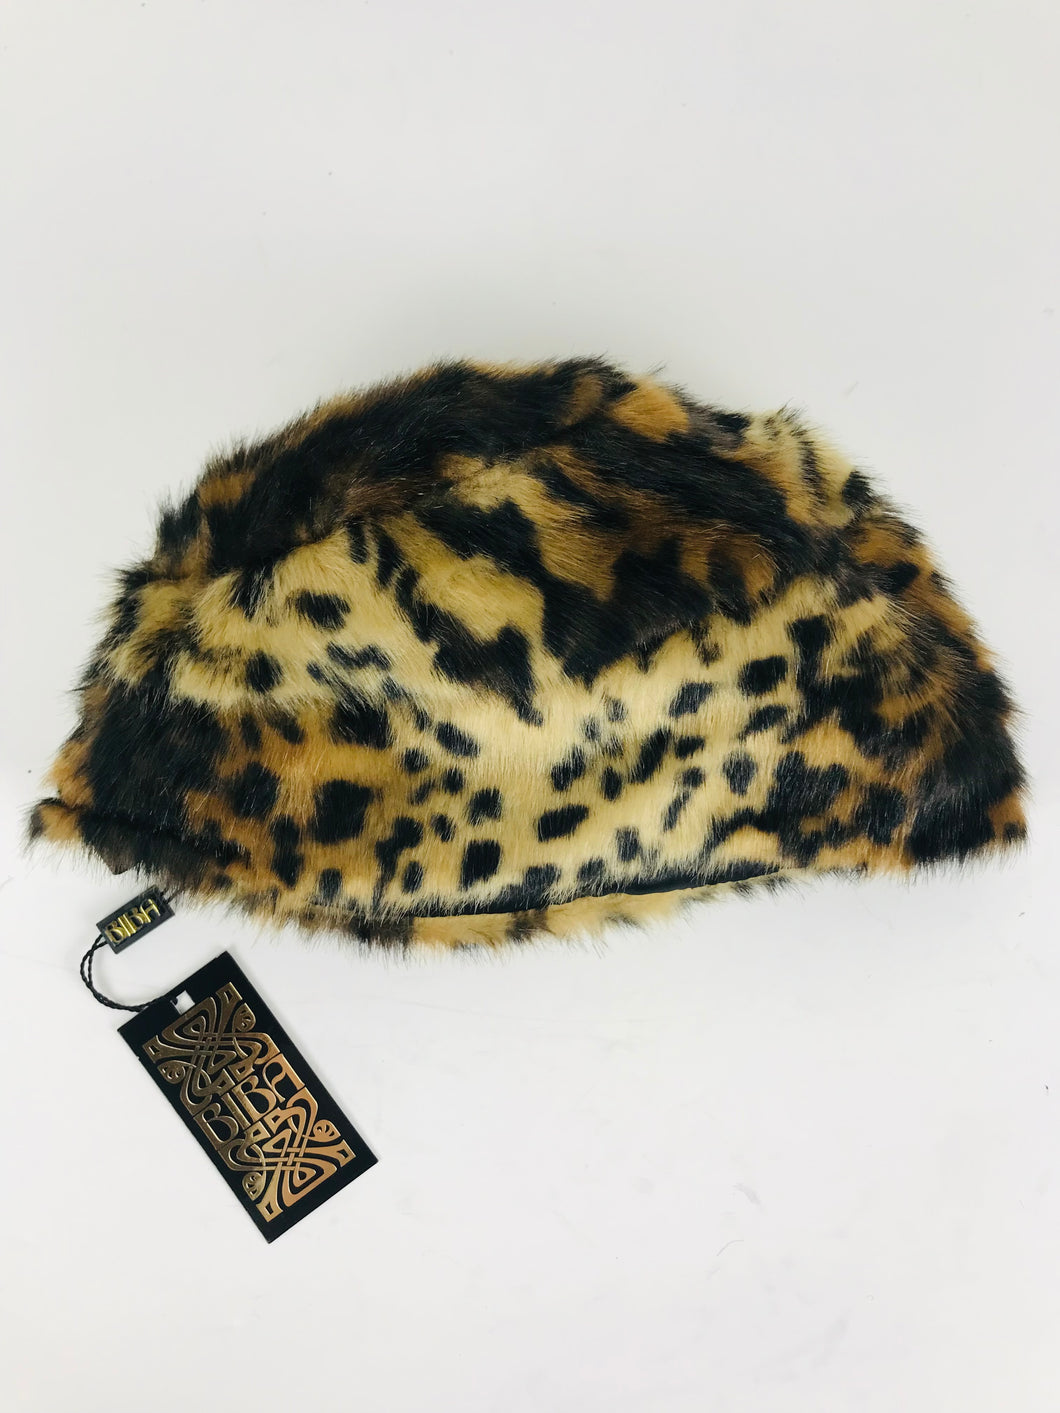 Biba Women's Faux Fur Leopard Print Hat NWT | M UK10-12 | Multicoloured